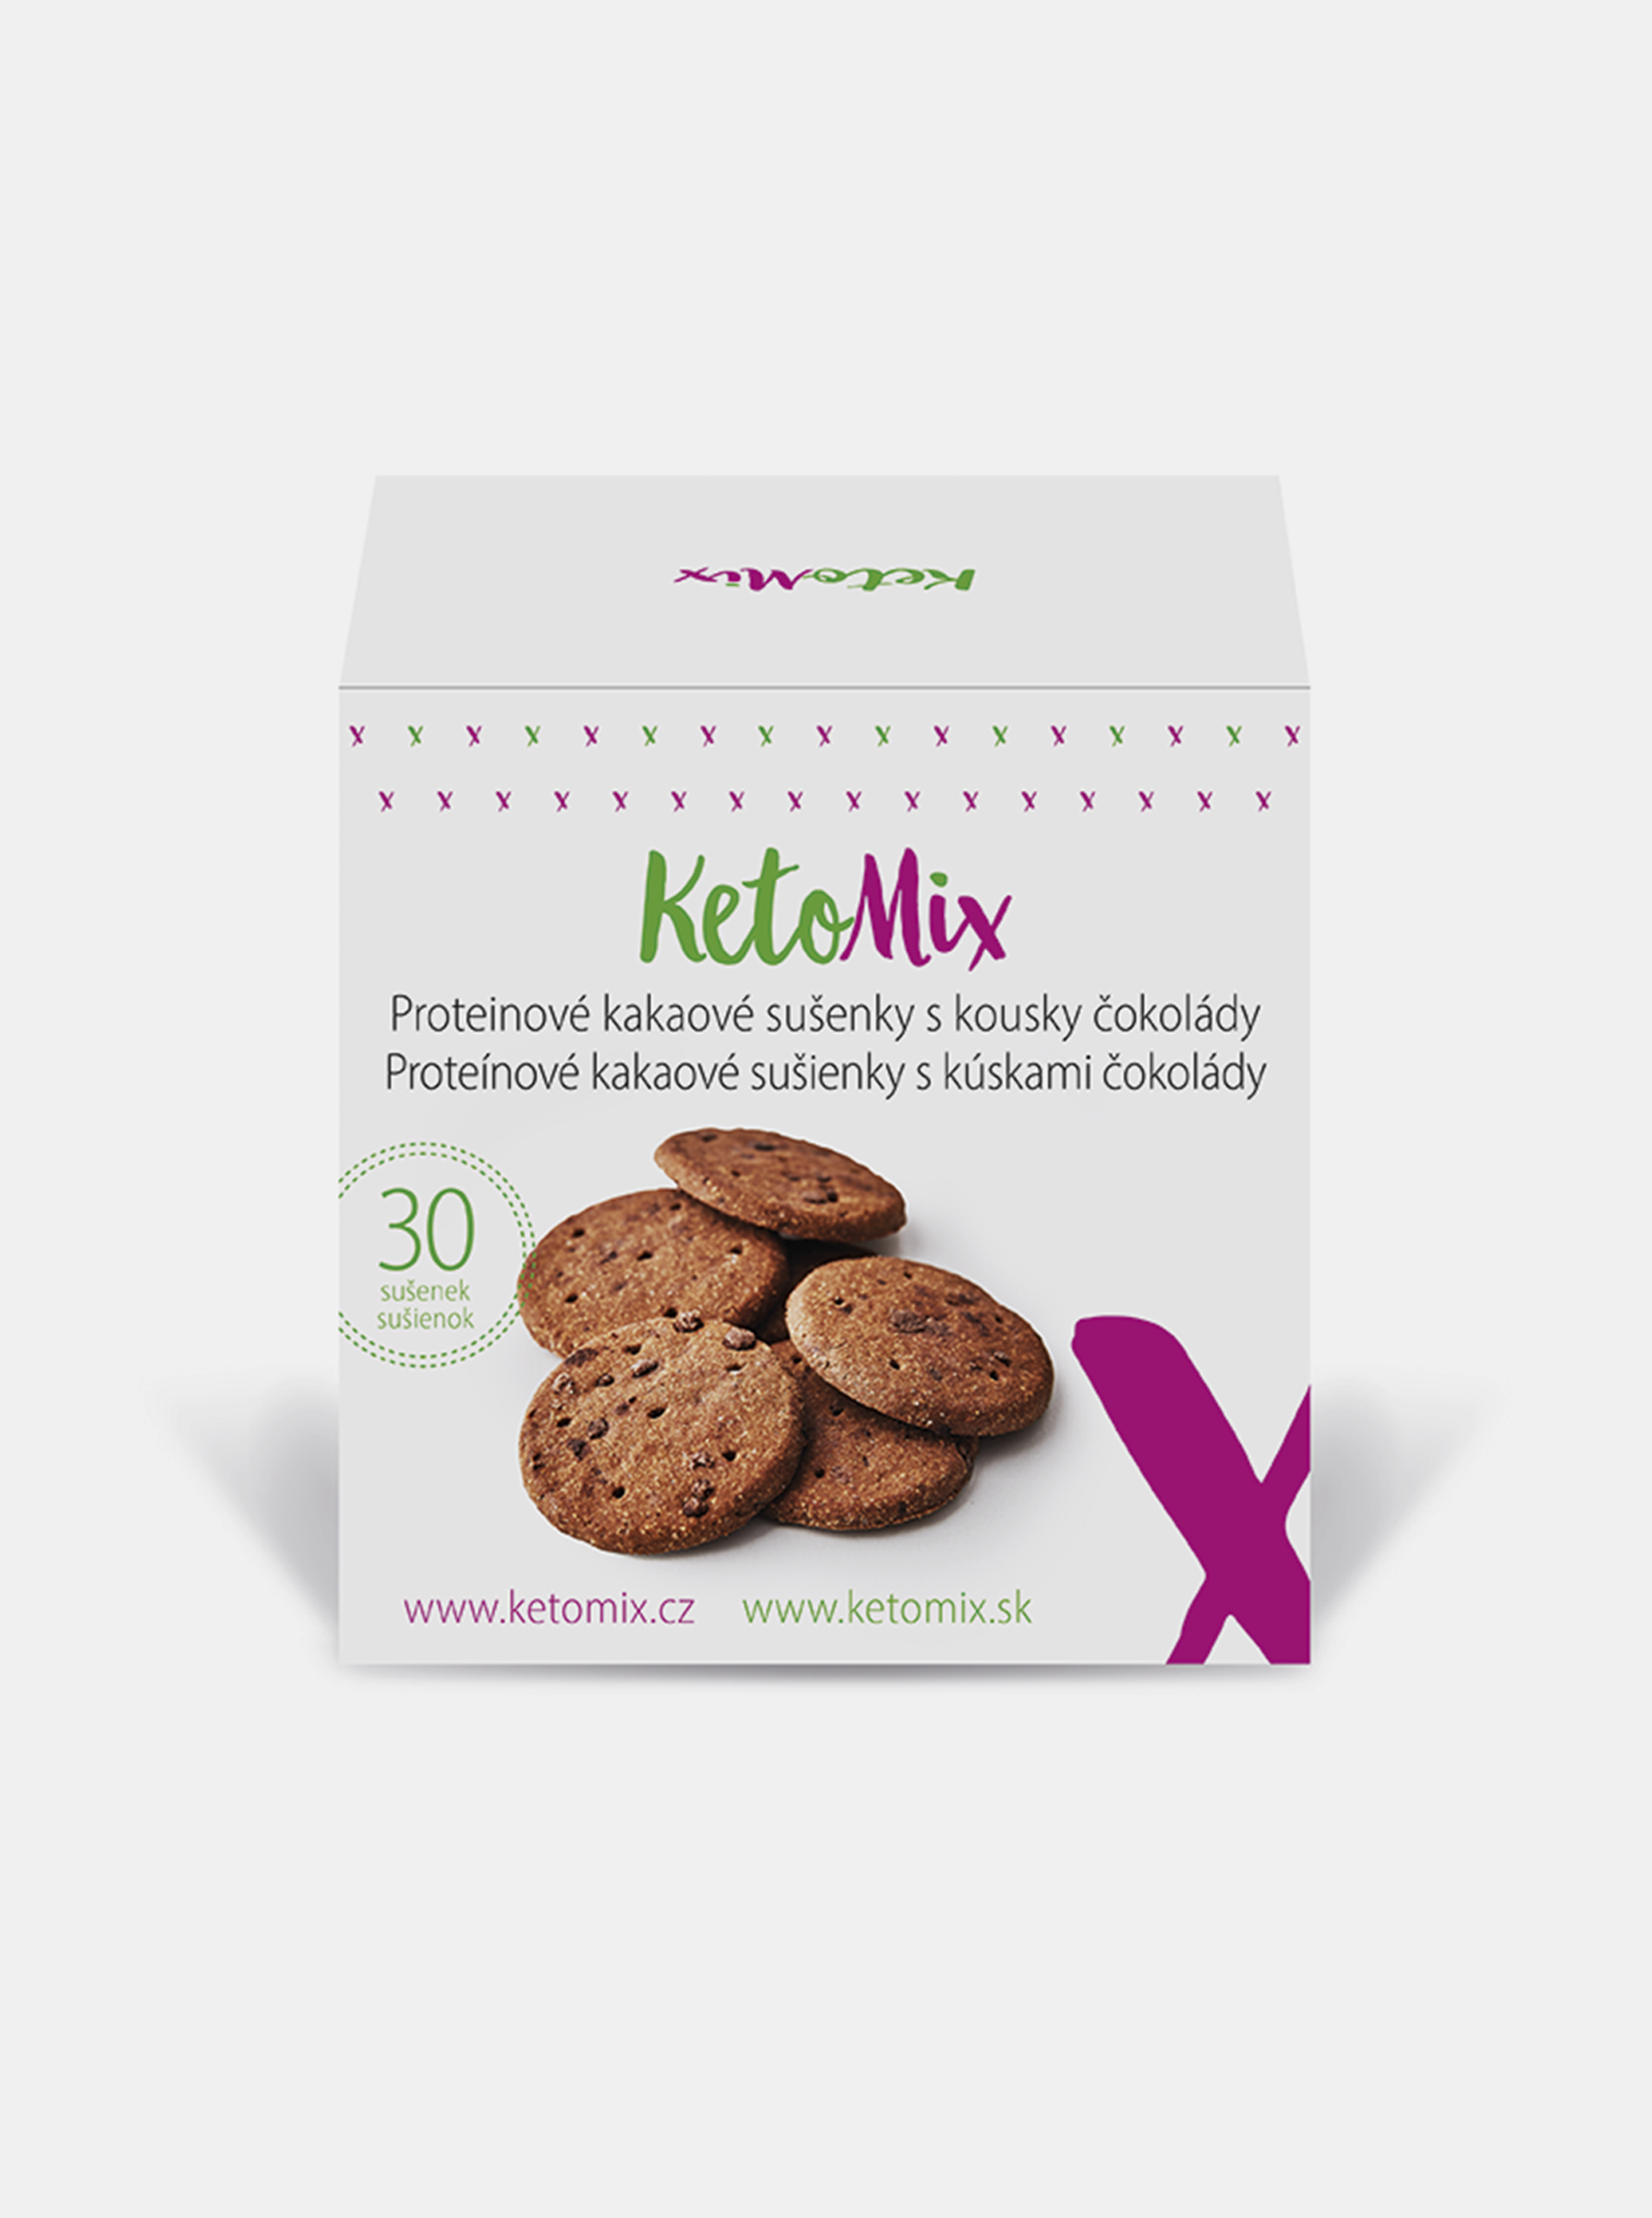 Proteinové kakaové sušenky s kousky čokolády KetoMix (30 sušenek)